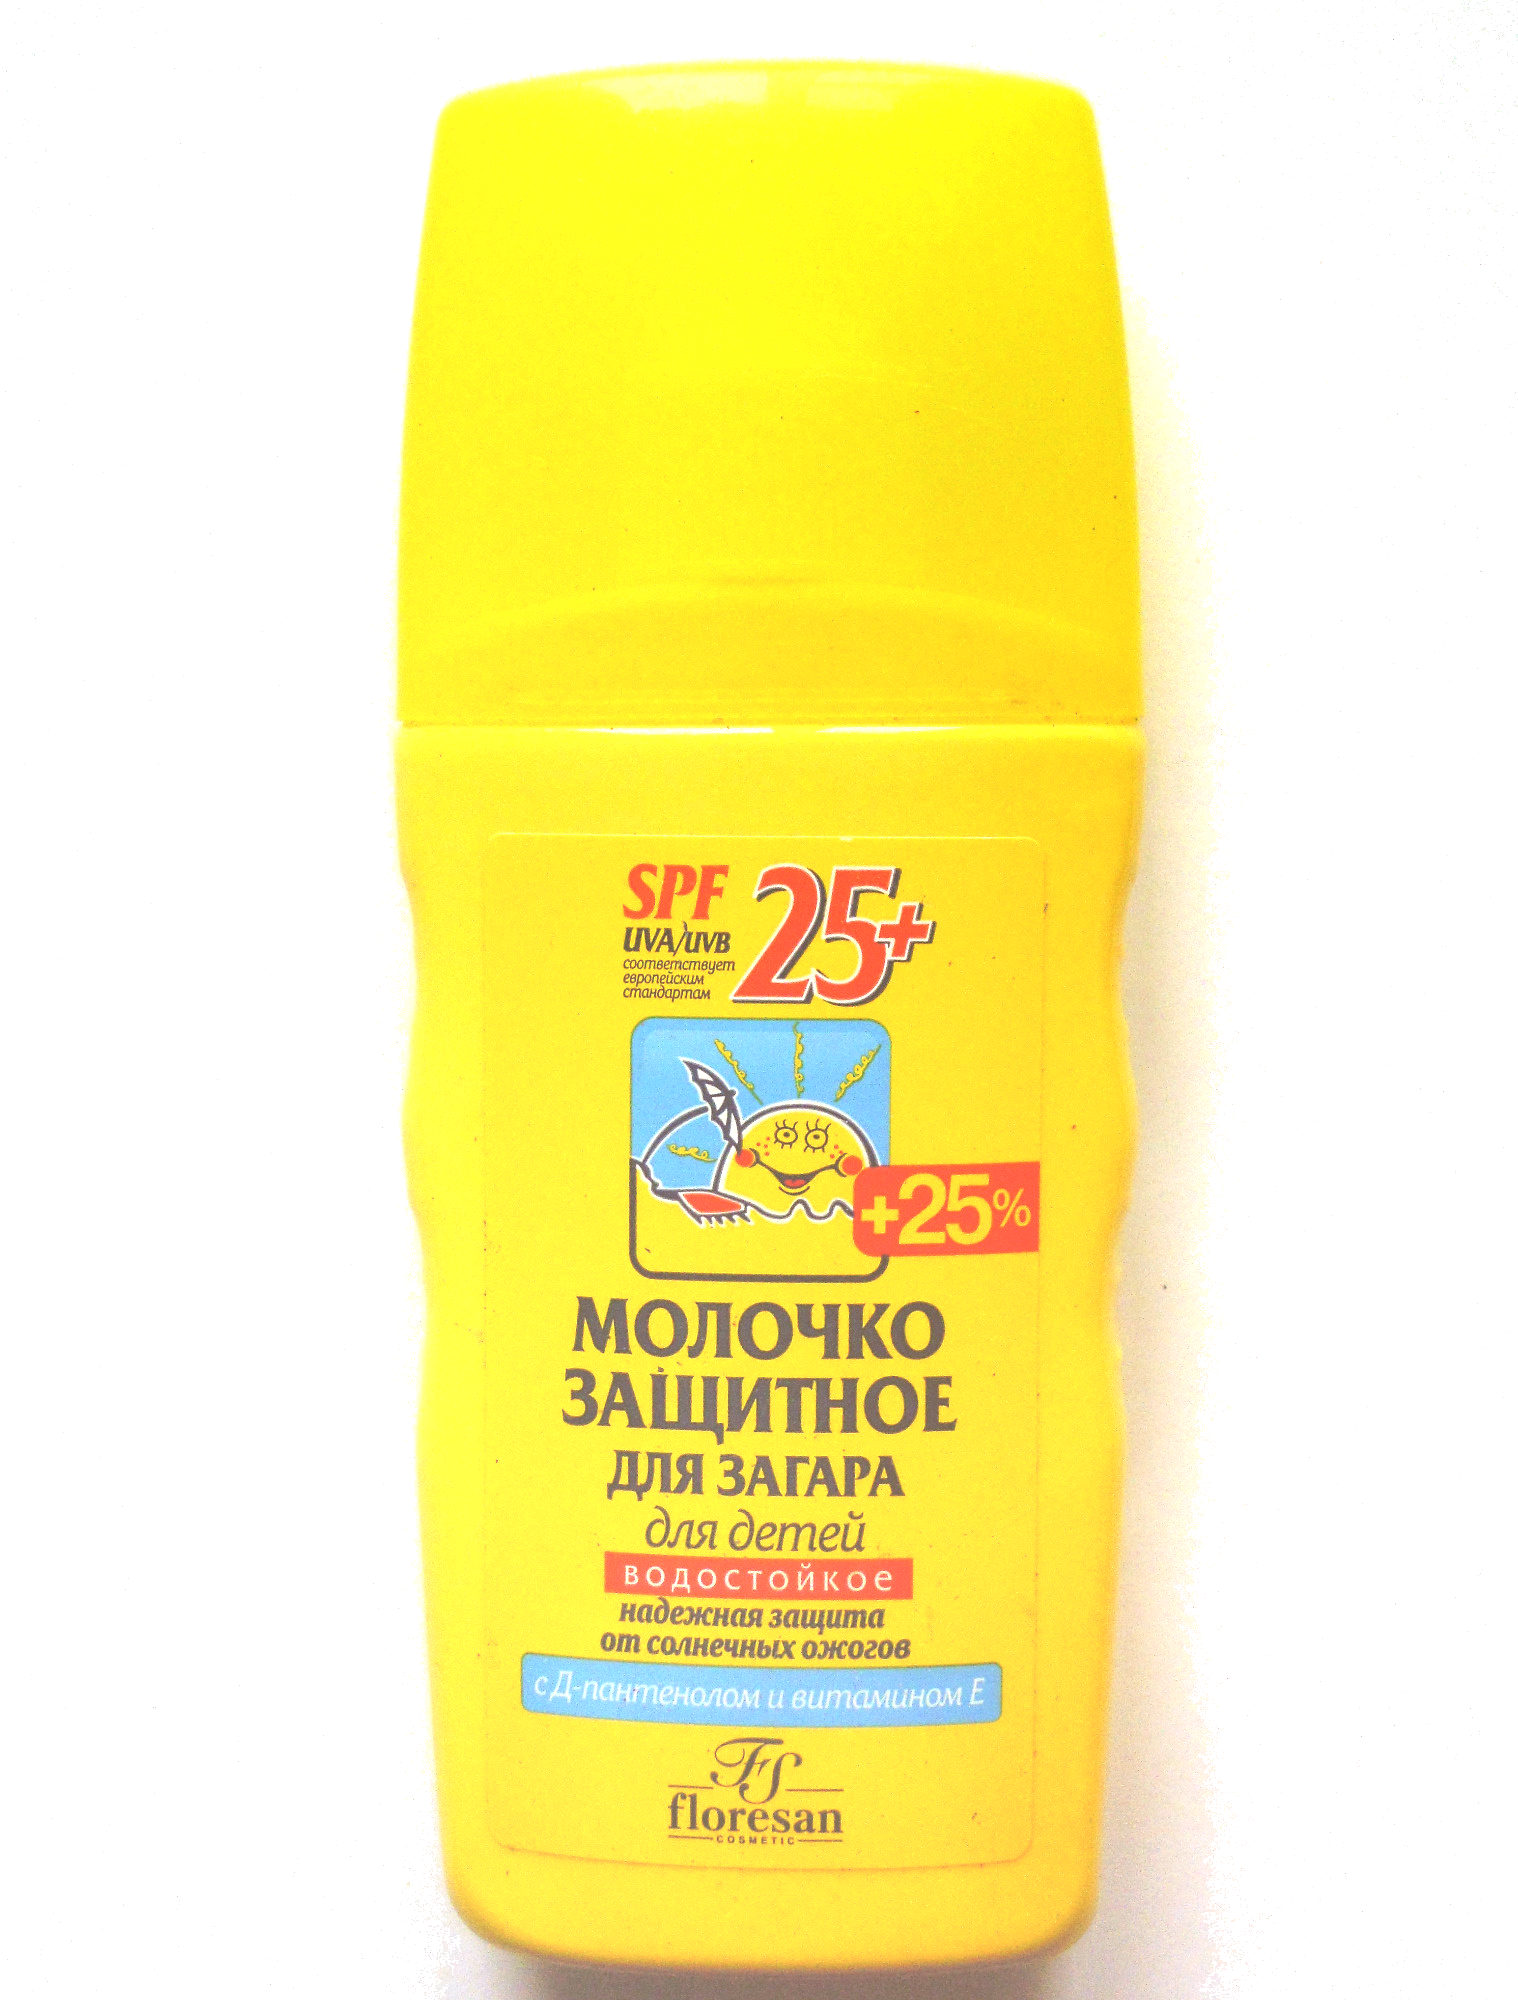 Молочко защитное для загара для детей - 製品 - ru